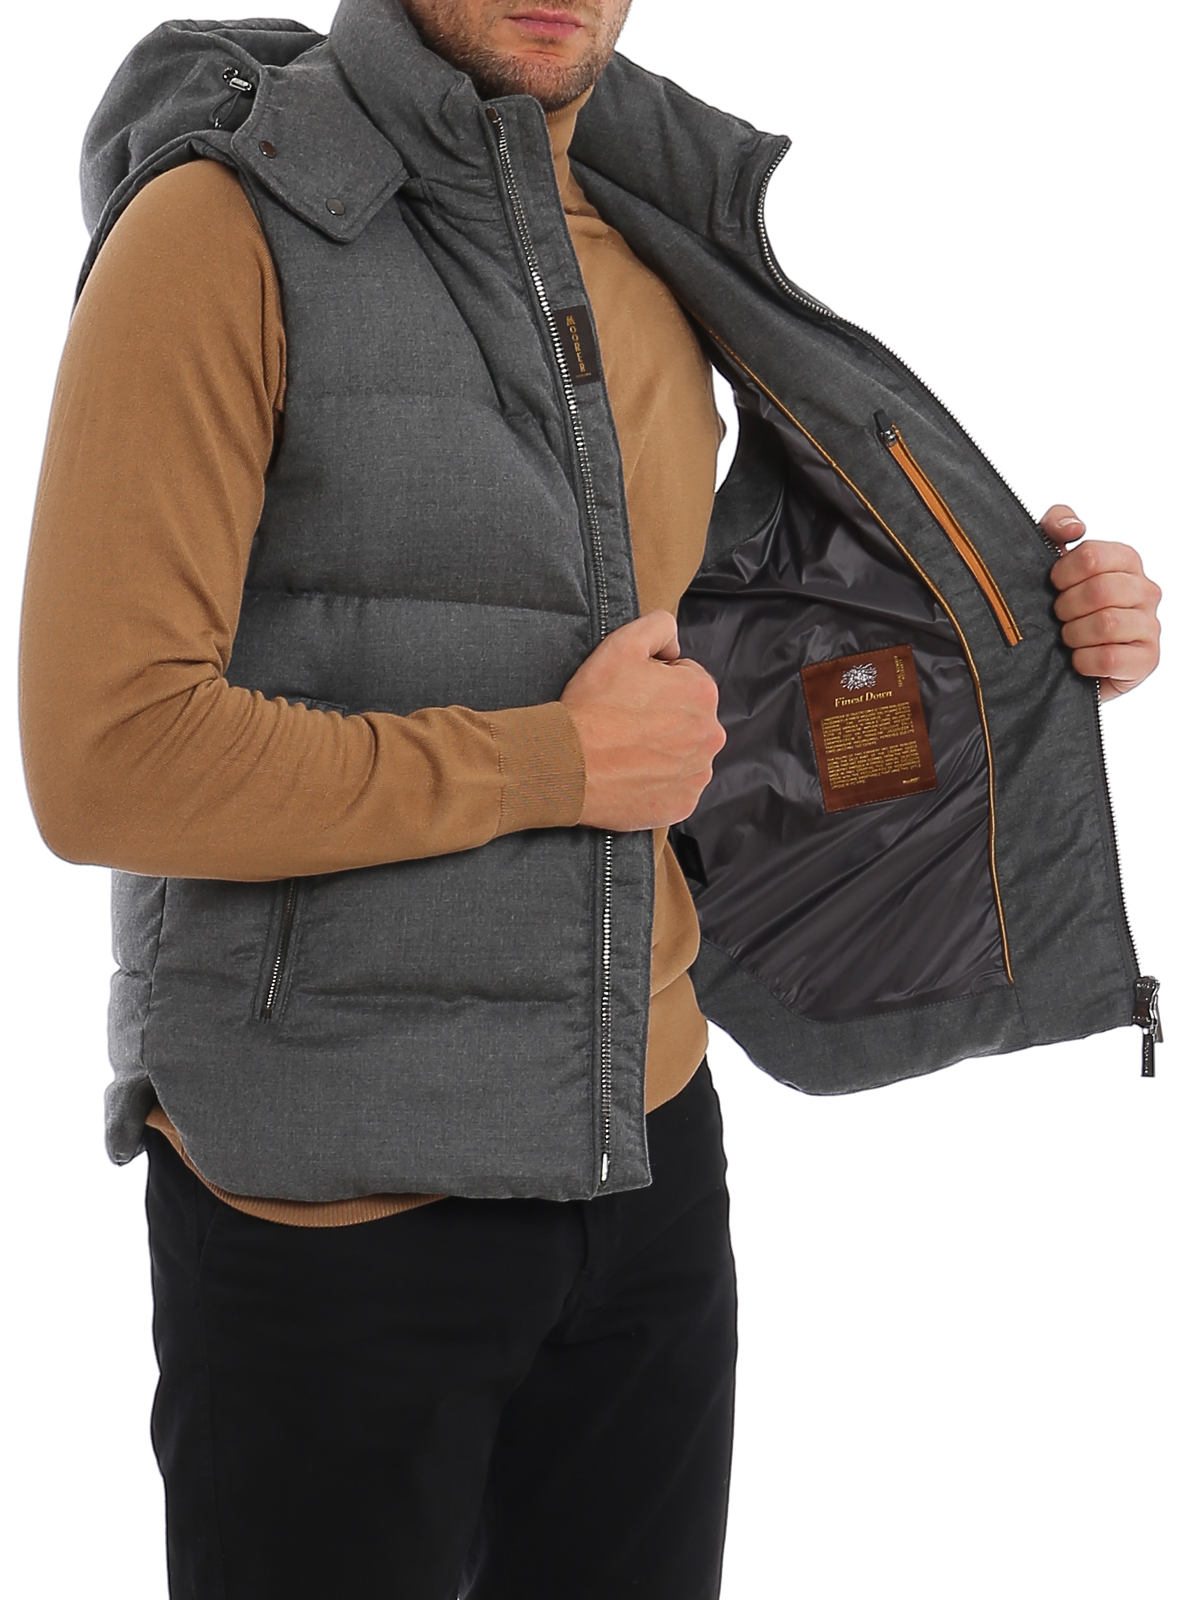 Padded jackets - Fire puffer vest - MOUGI100180LU0384 | iKRIX.com